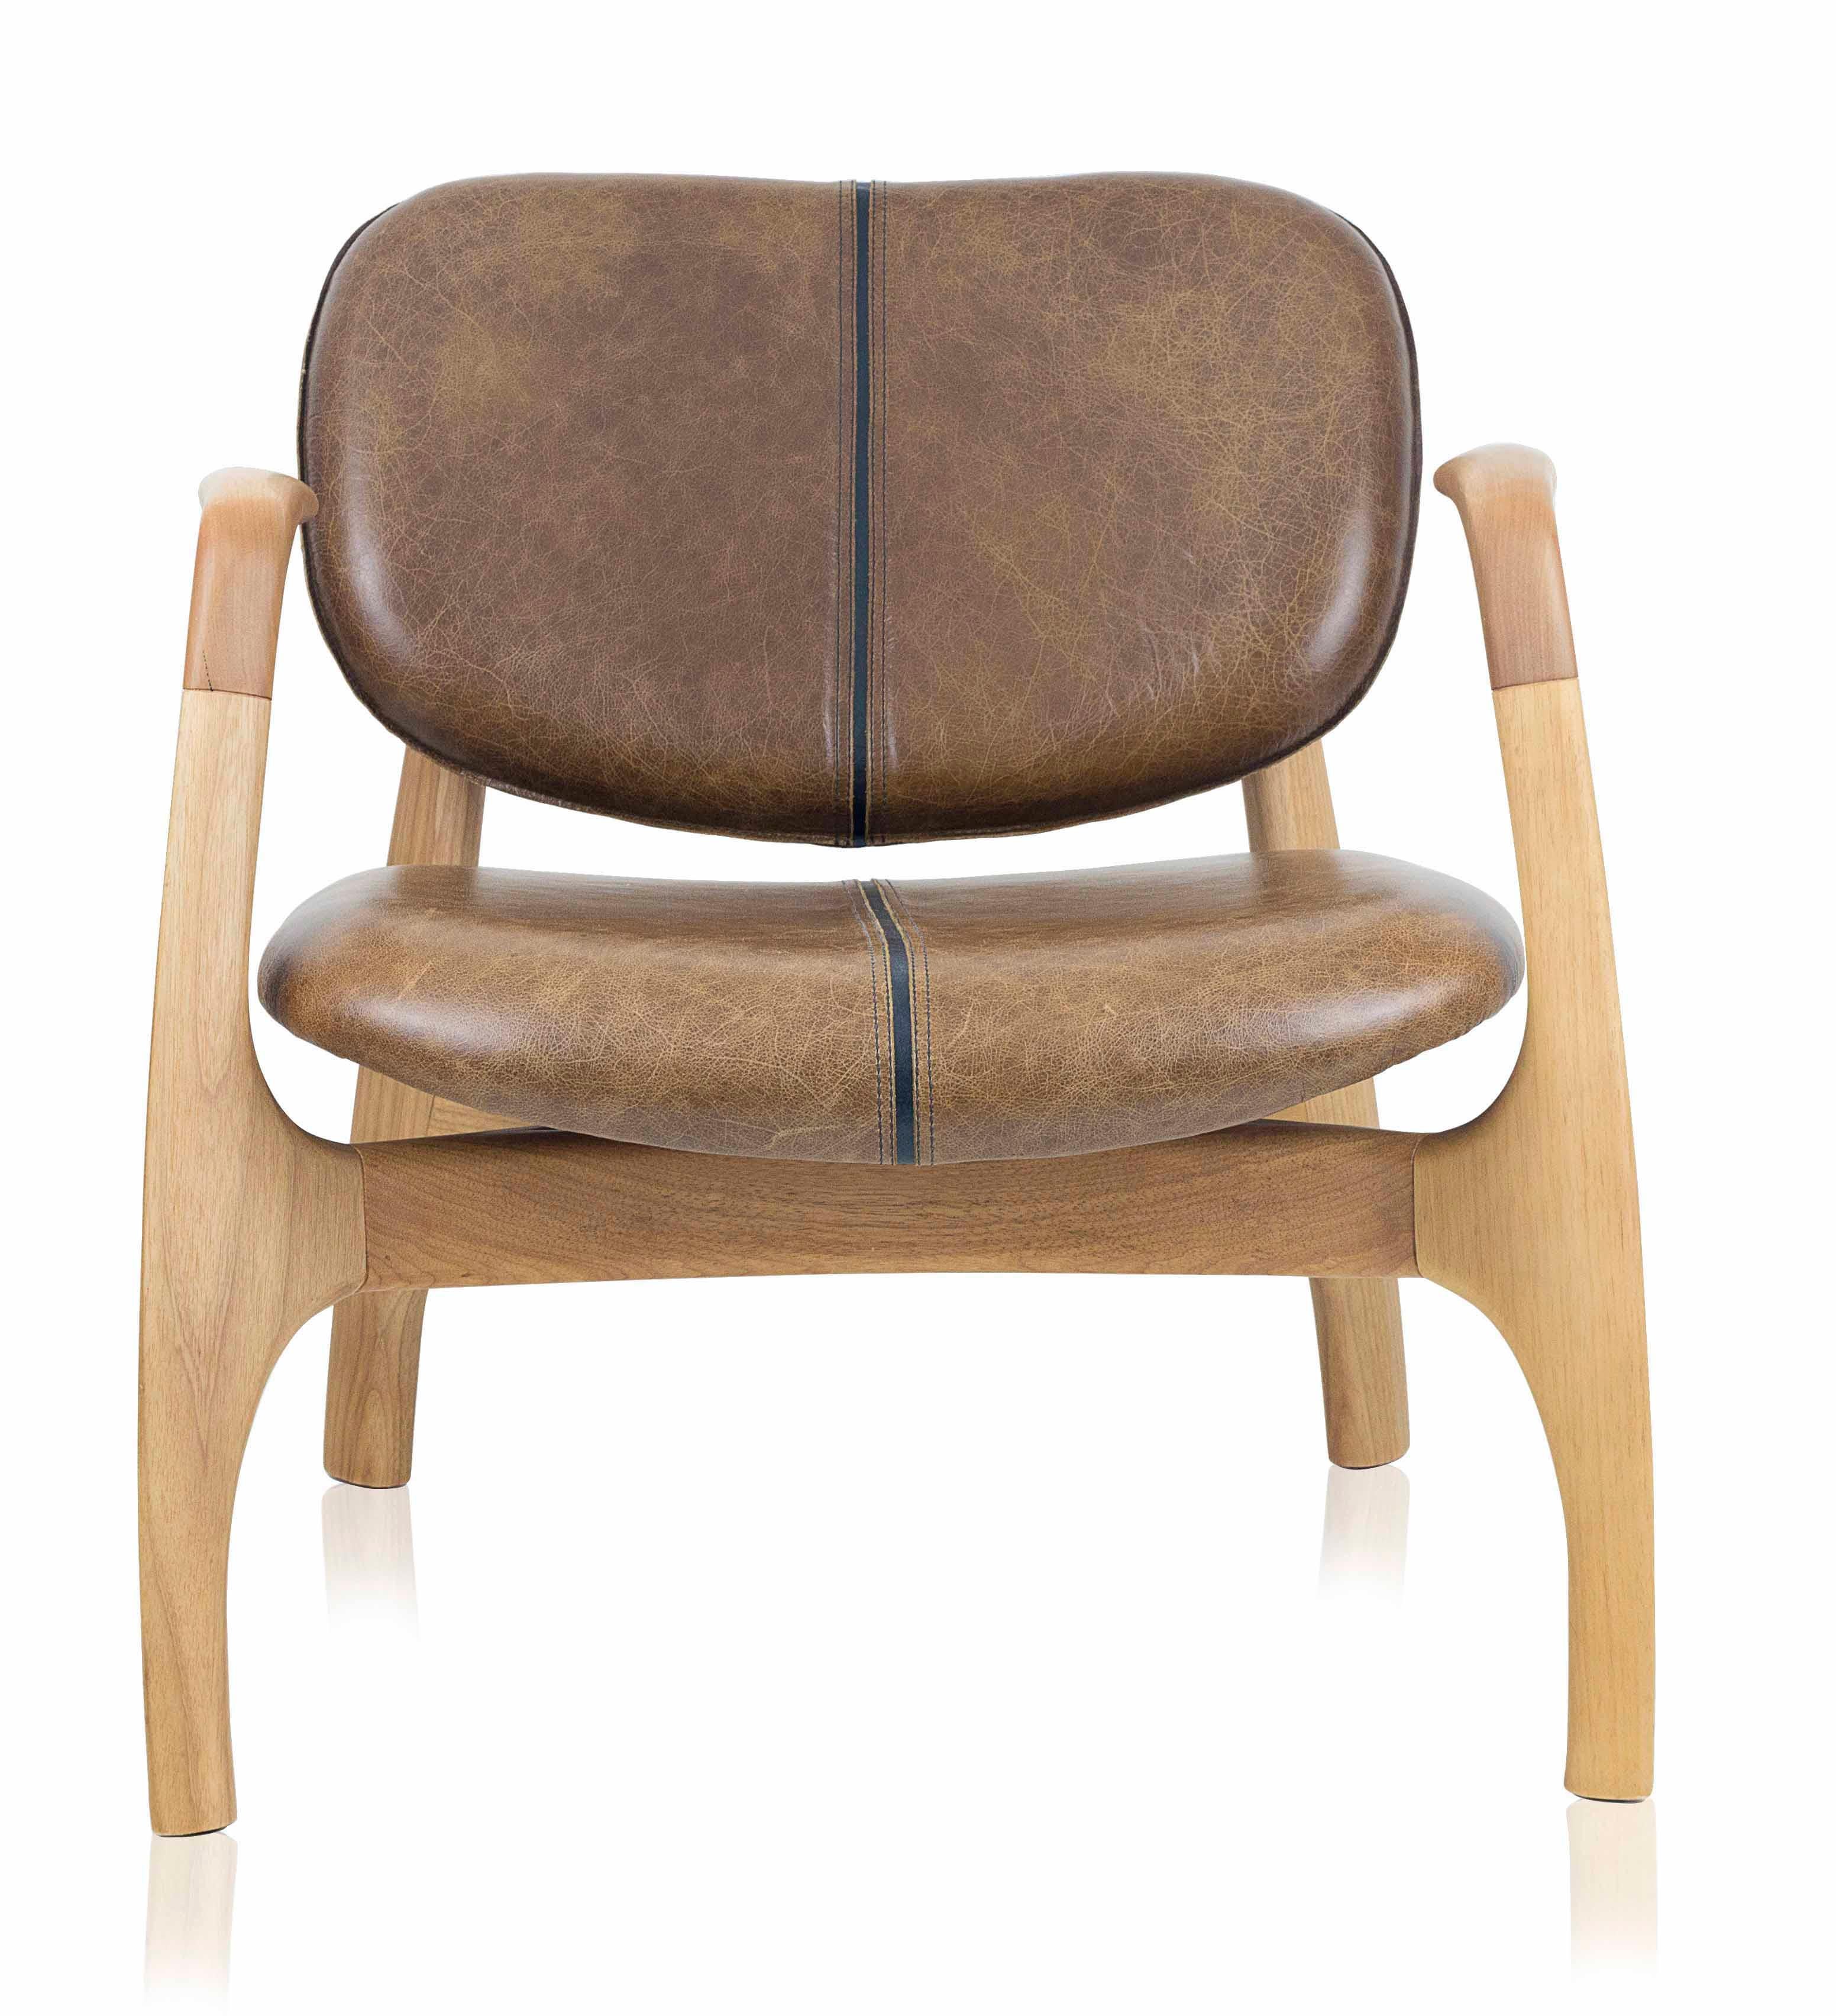 Conçu pour les espaces extérieurs et intérieurs, ce fauteuil fait directement référence à un sport qui s'identifie culturellement au Brésil : le surf.
La première pièce produite afin de présenter le concept avait le dossier et l'assise de la chaise